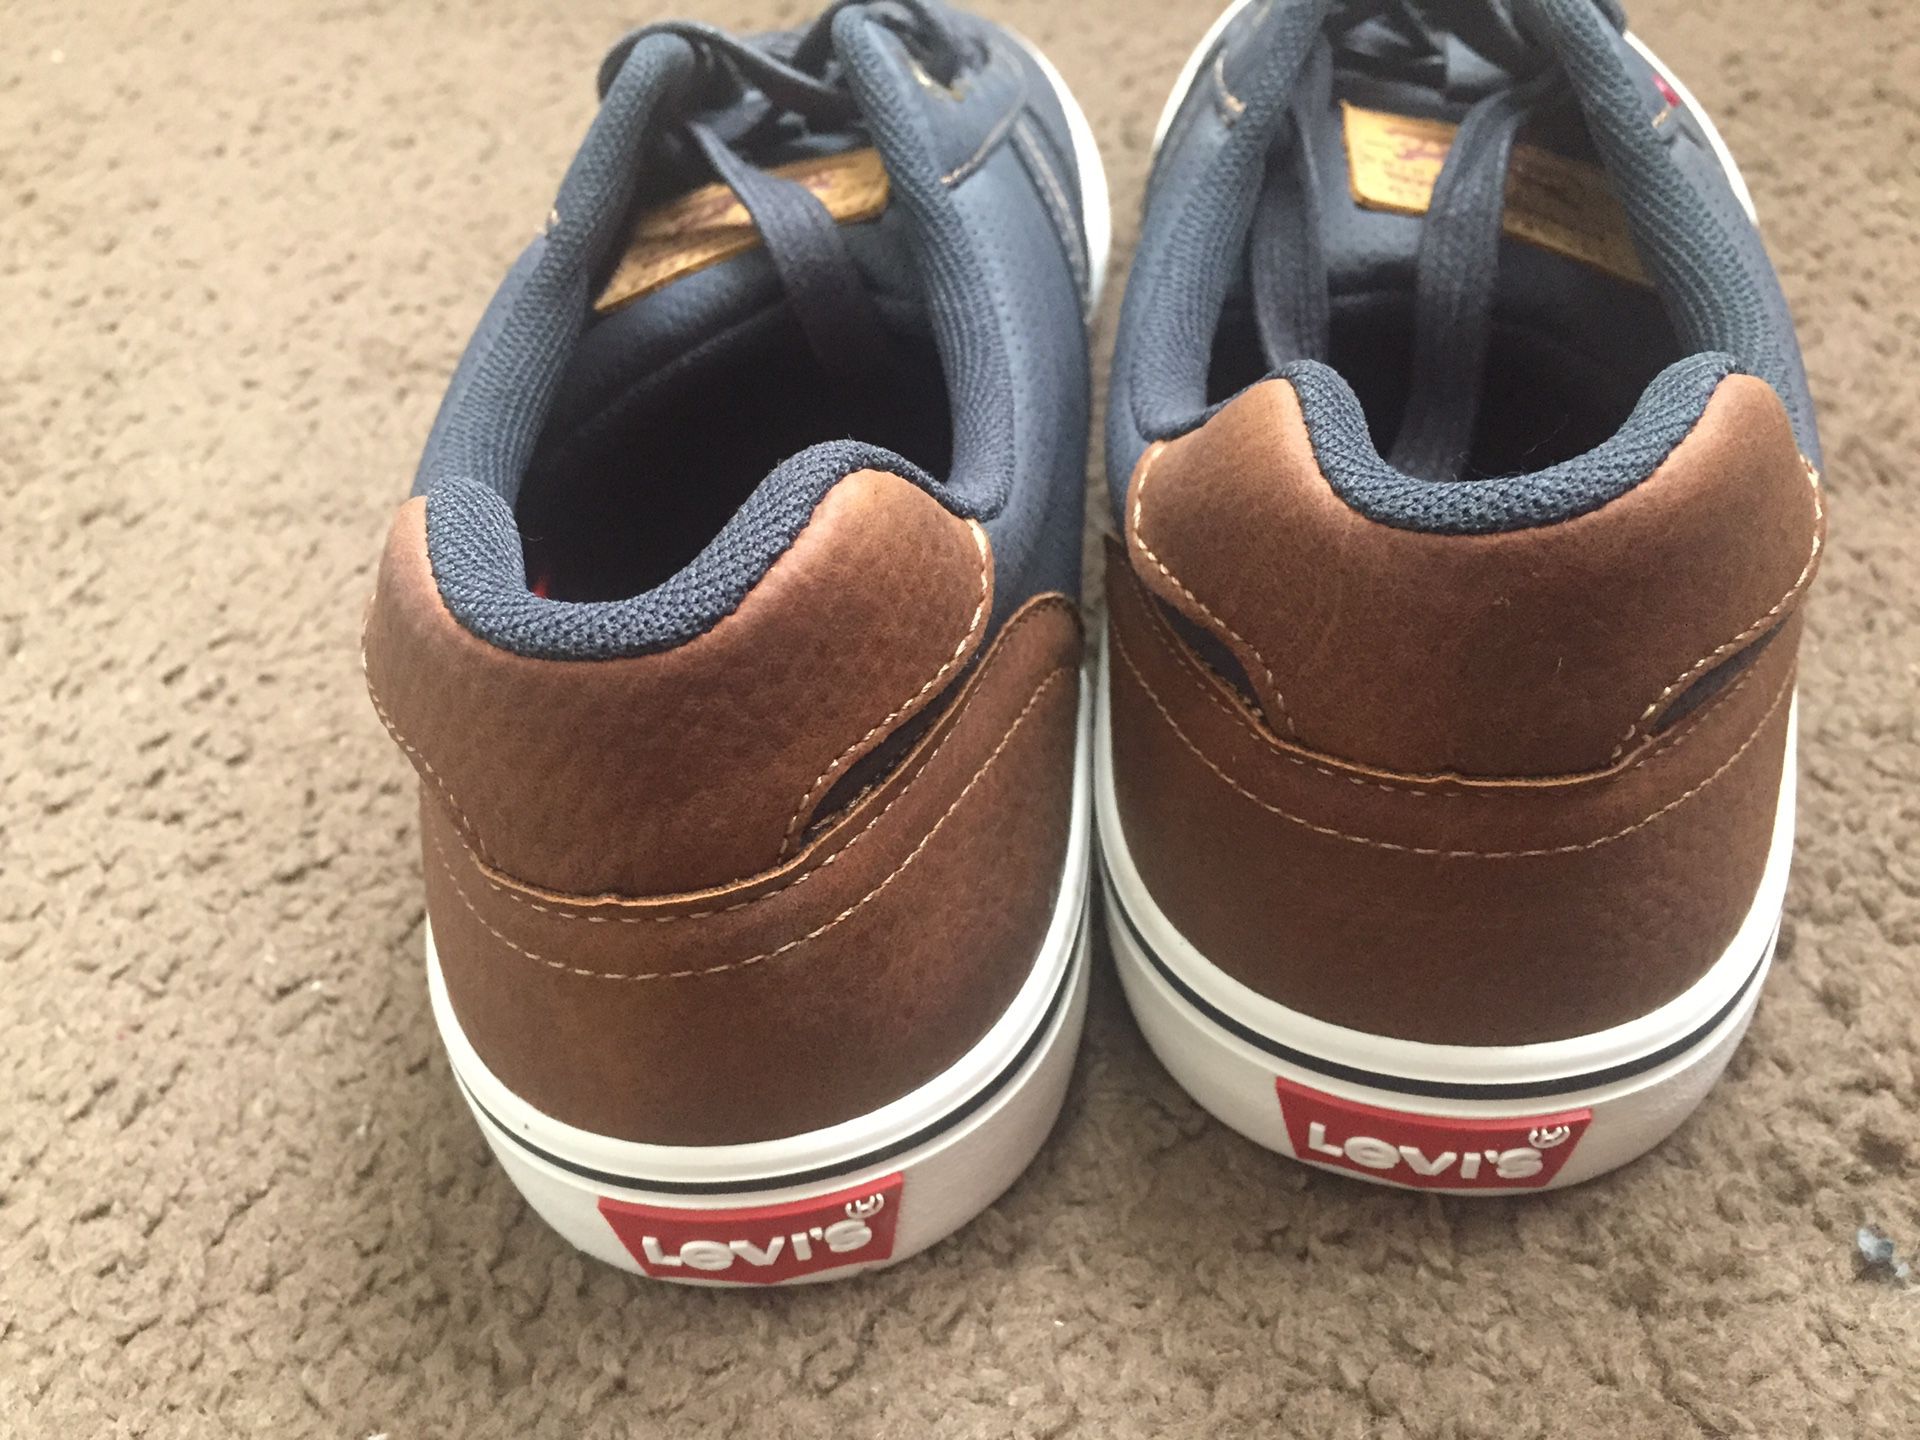 Levi’s shoes